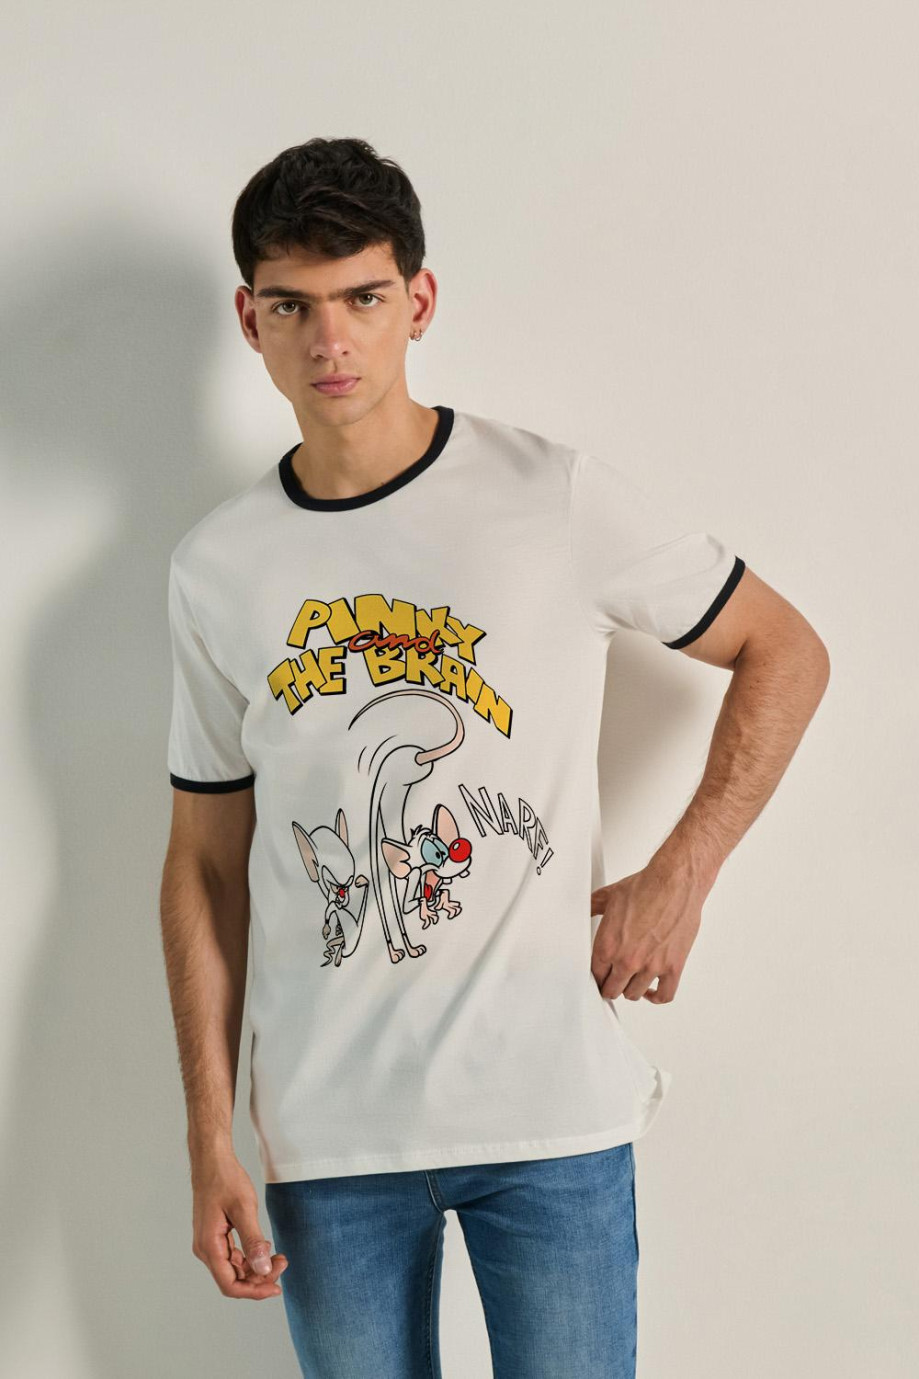 Camiseta unicolor manga corta con arte de Pinky y Cerebro